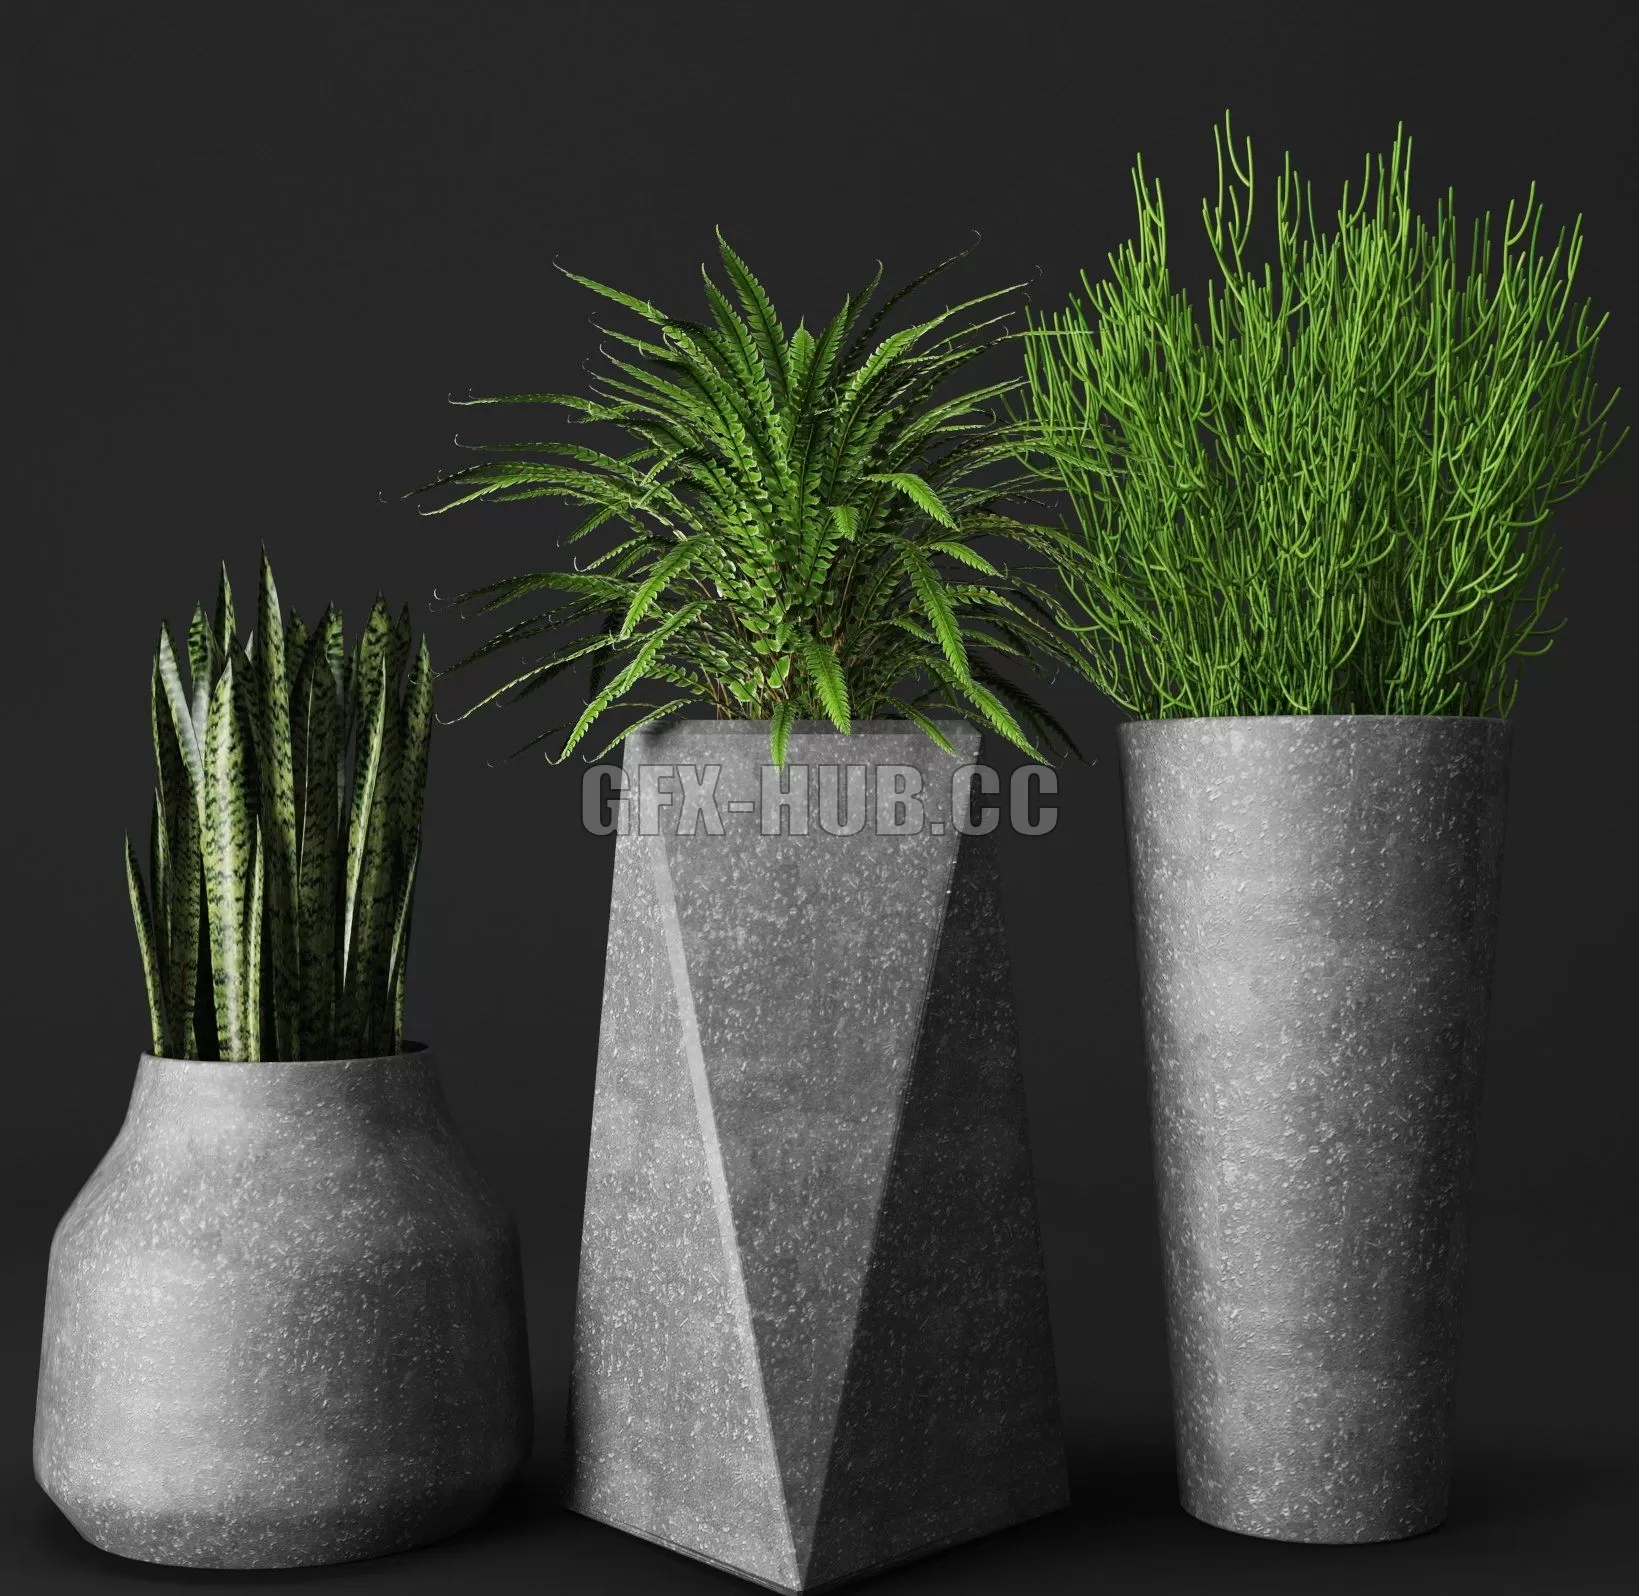 PLANT – Set of concrete pots with plants